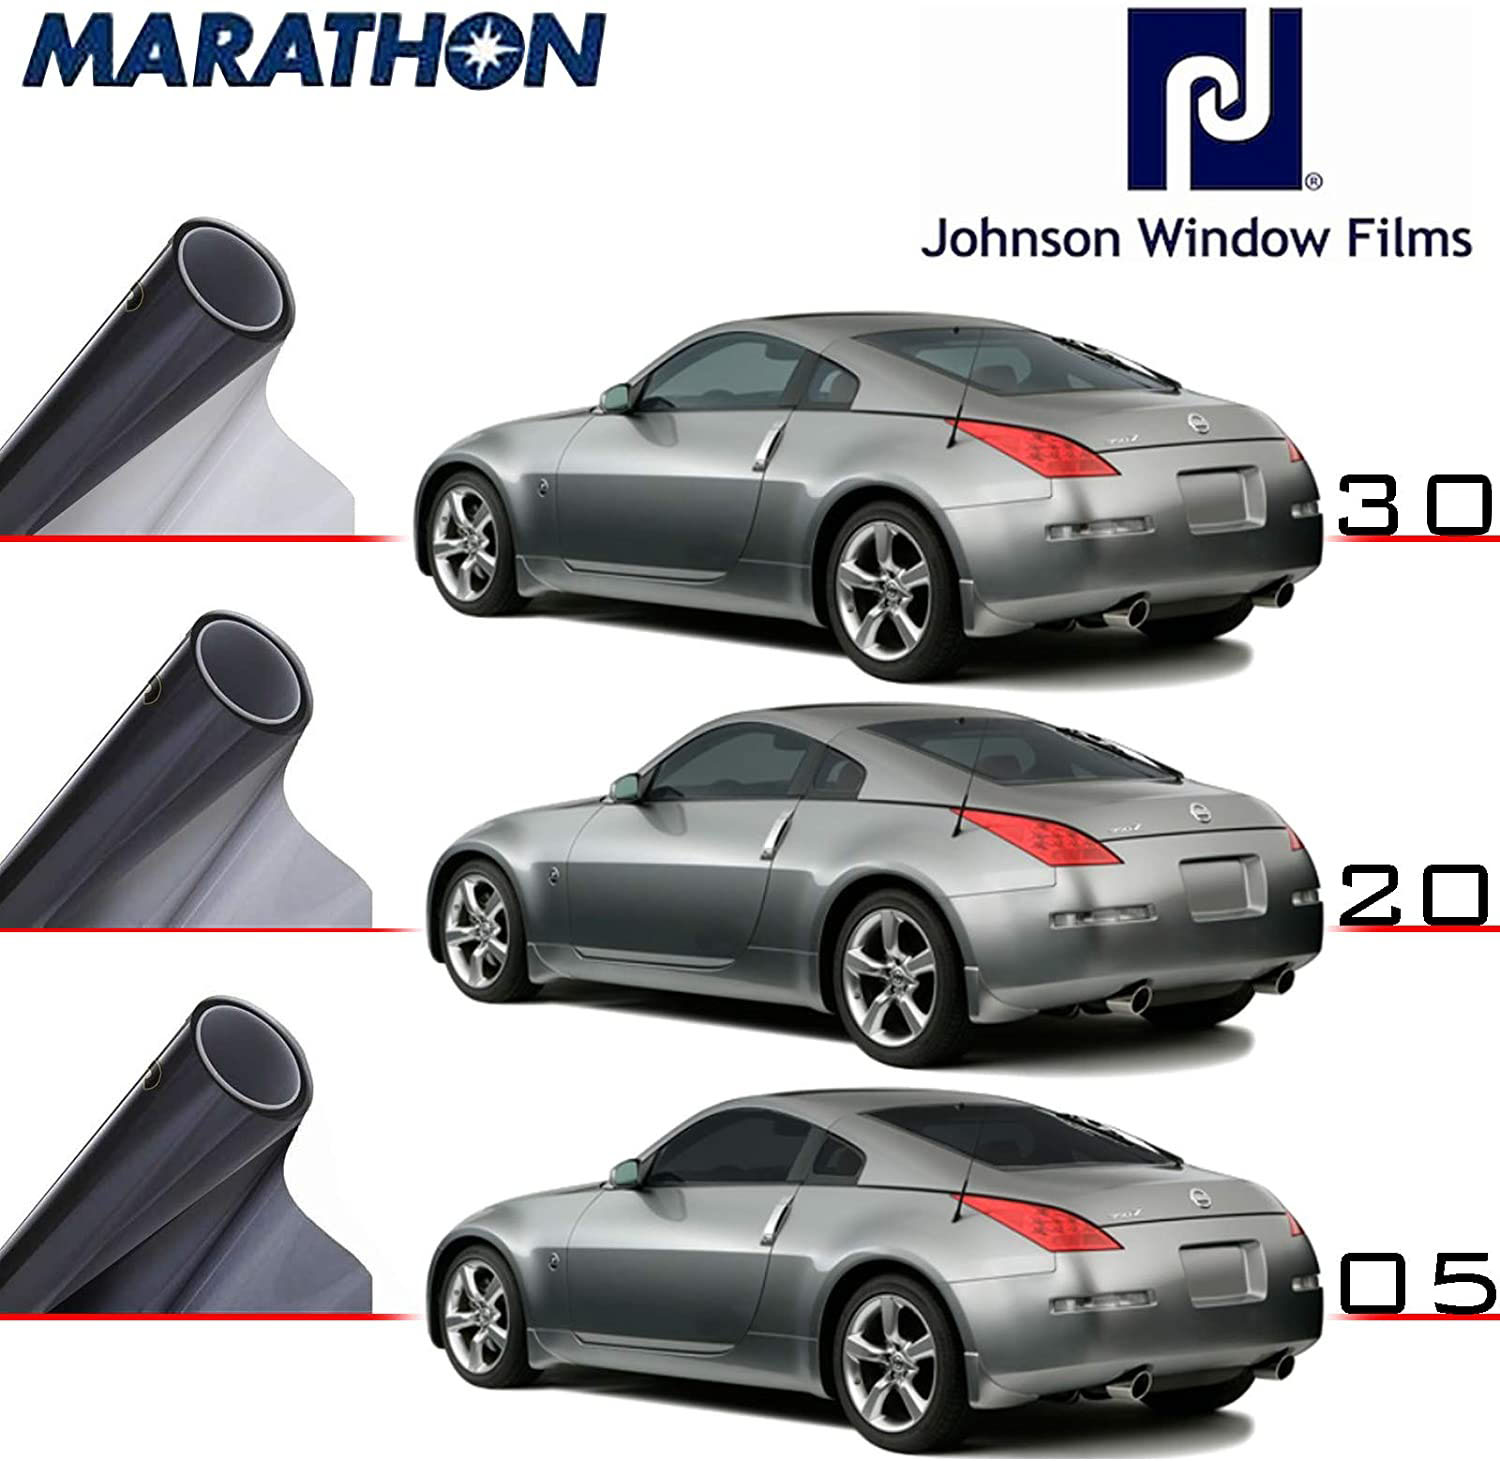 Pellicola Oscurante Vetri Johnson Marathon Professionale 30,5m x 51 cm 05 %  - Tech Solution